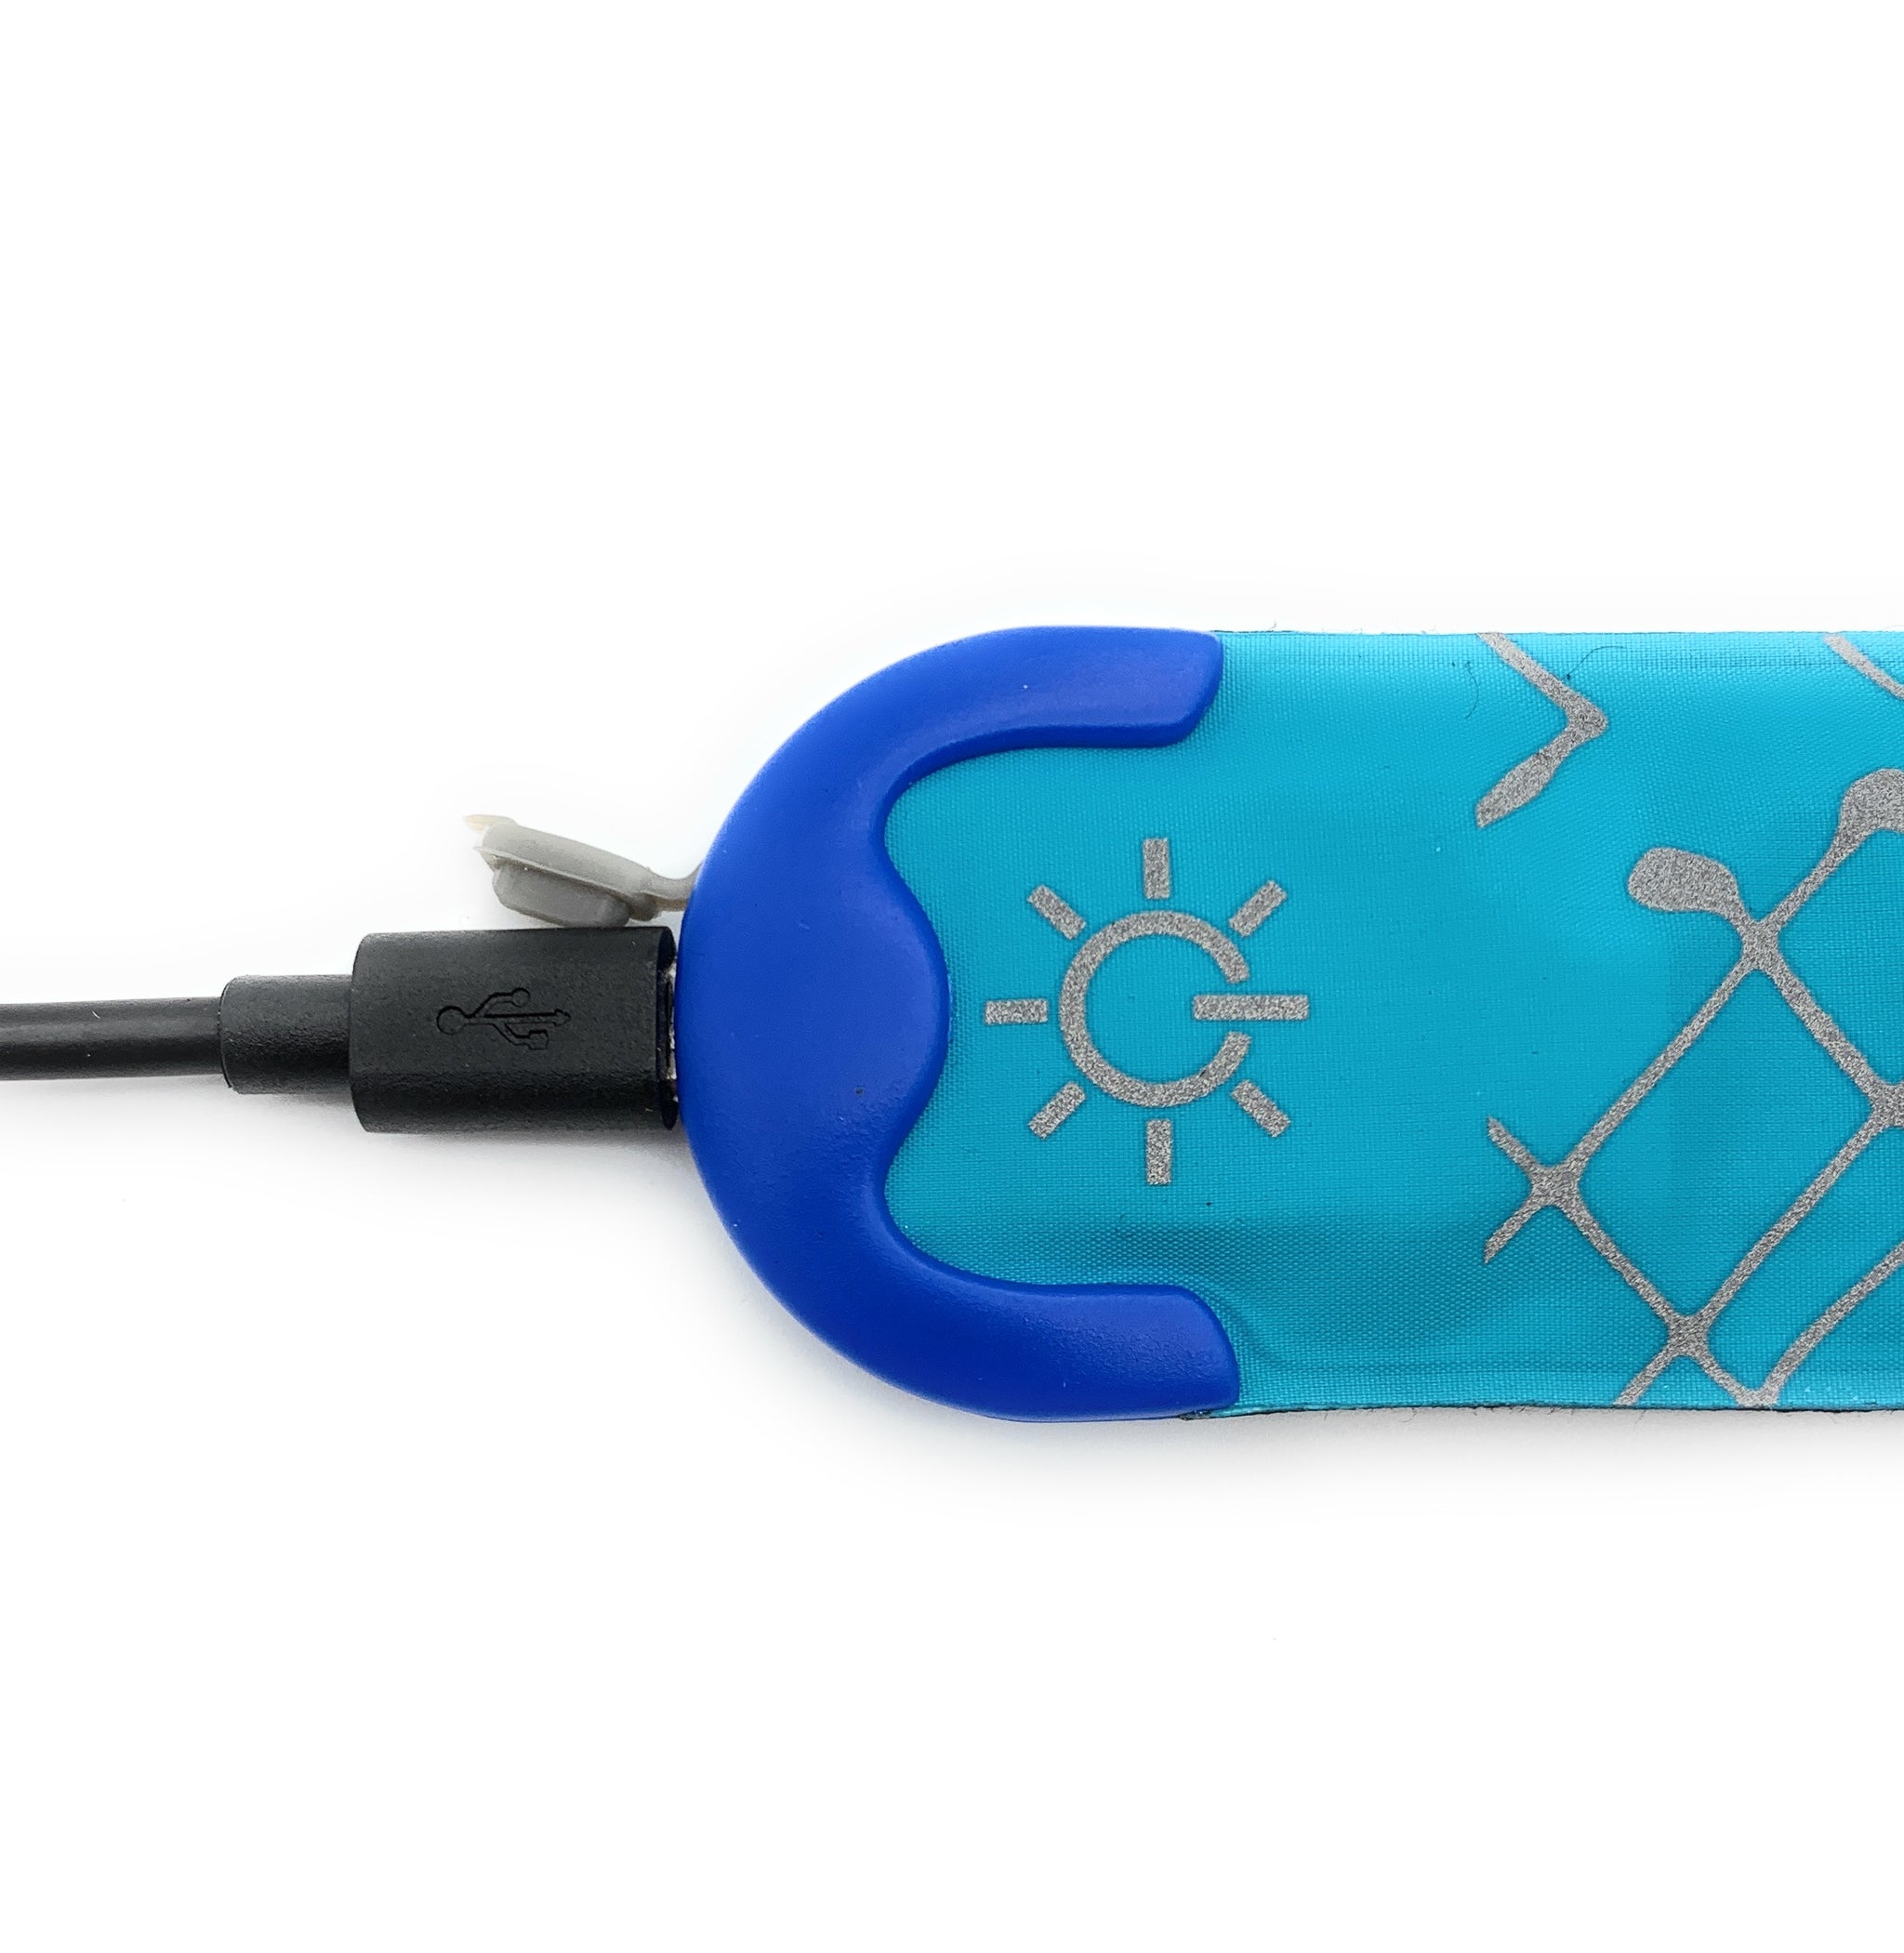 USB wiederaufladbar LED Slap Band Sicherheitslicht / 1 St. blau - elanox